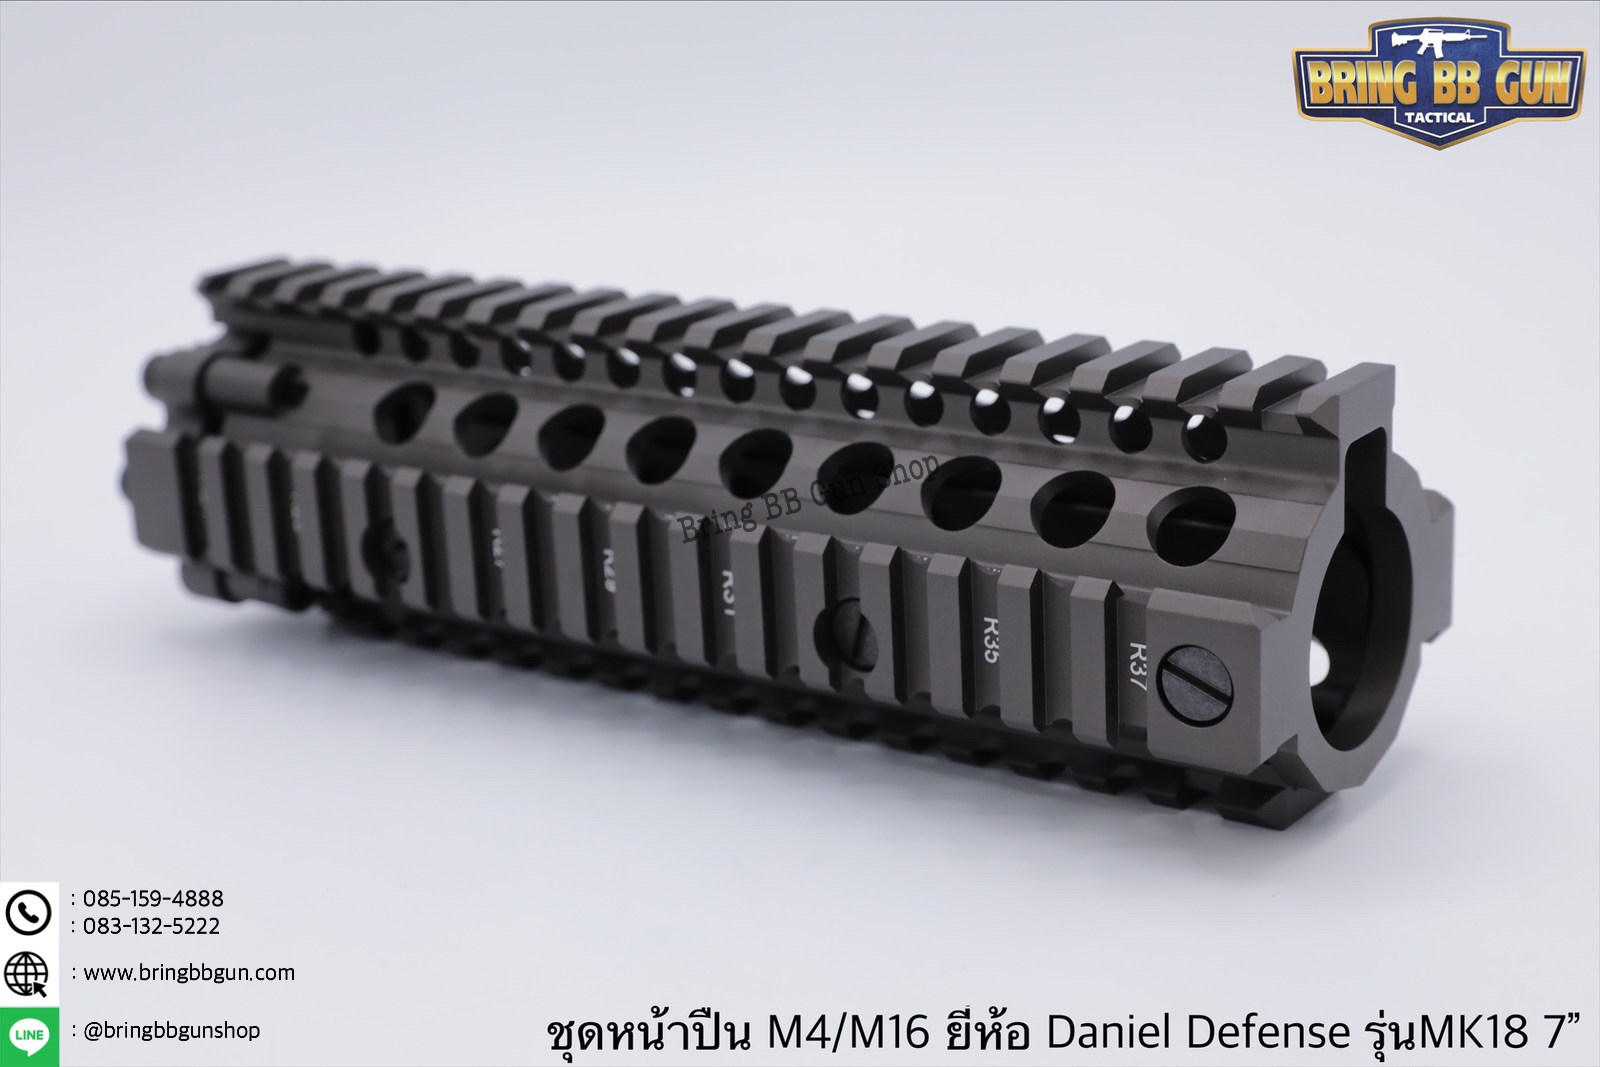 ชุดหน้า ยี่ห้อ Daniel Defense MK18 RIS II ระบบรางPicatinny(ราง20mm.)  เส้นรอบวงด้านใน : 29mm. มี3รุ่นให้เลือก #รุ่นความยาว7”  น้ำหนัก 340 กรัม  #รุ่นความยาว9.5” น้ำหนัก 430 กรัม  #รุ่นความยาว12.5” น้ำหนัก 515 กรัม  คุณสมบัติ :  ผลิตจากอลูมิเนียมอย่างดี ตั